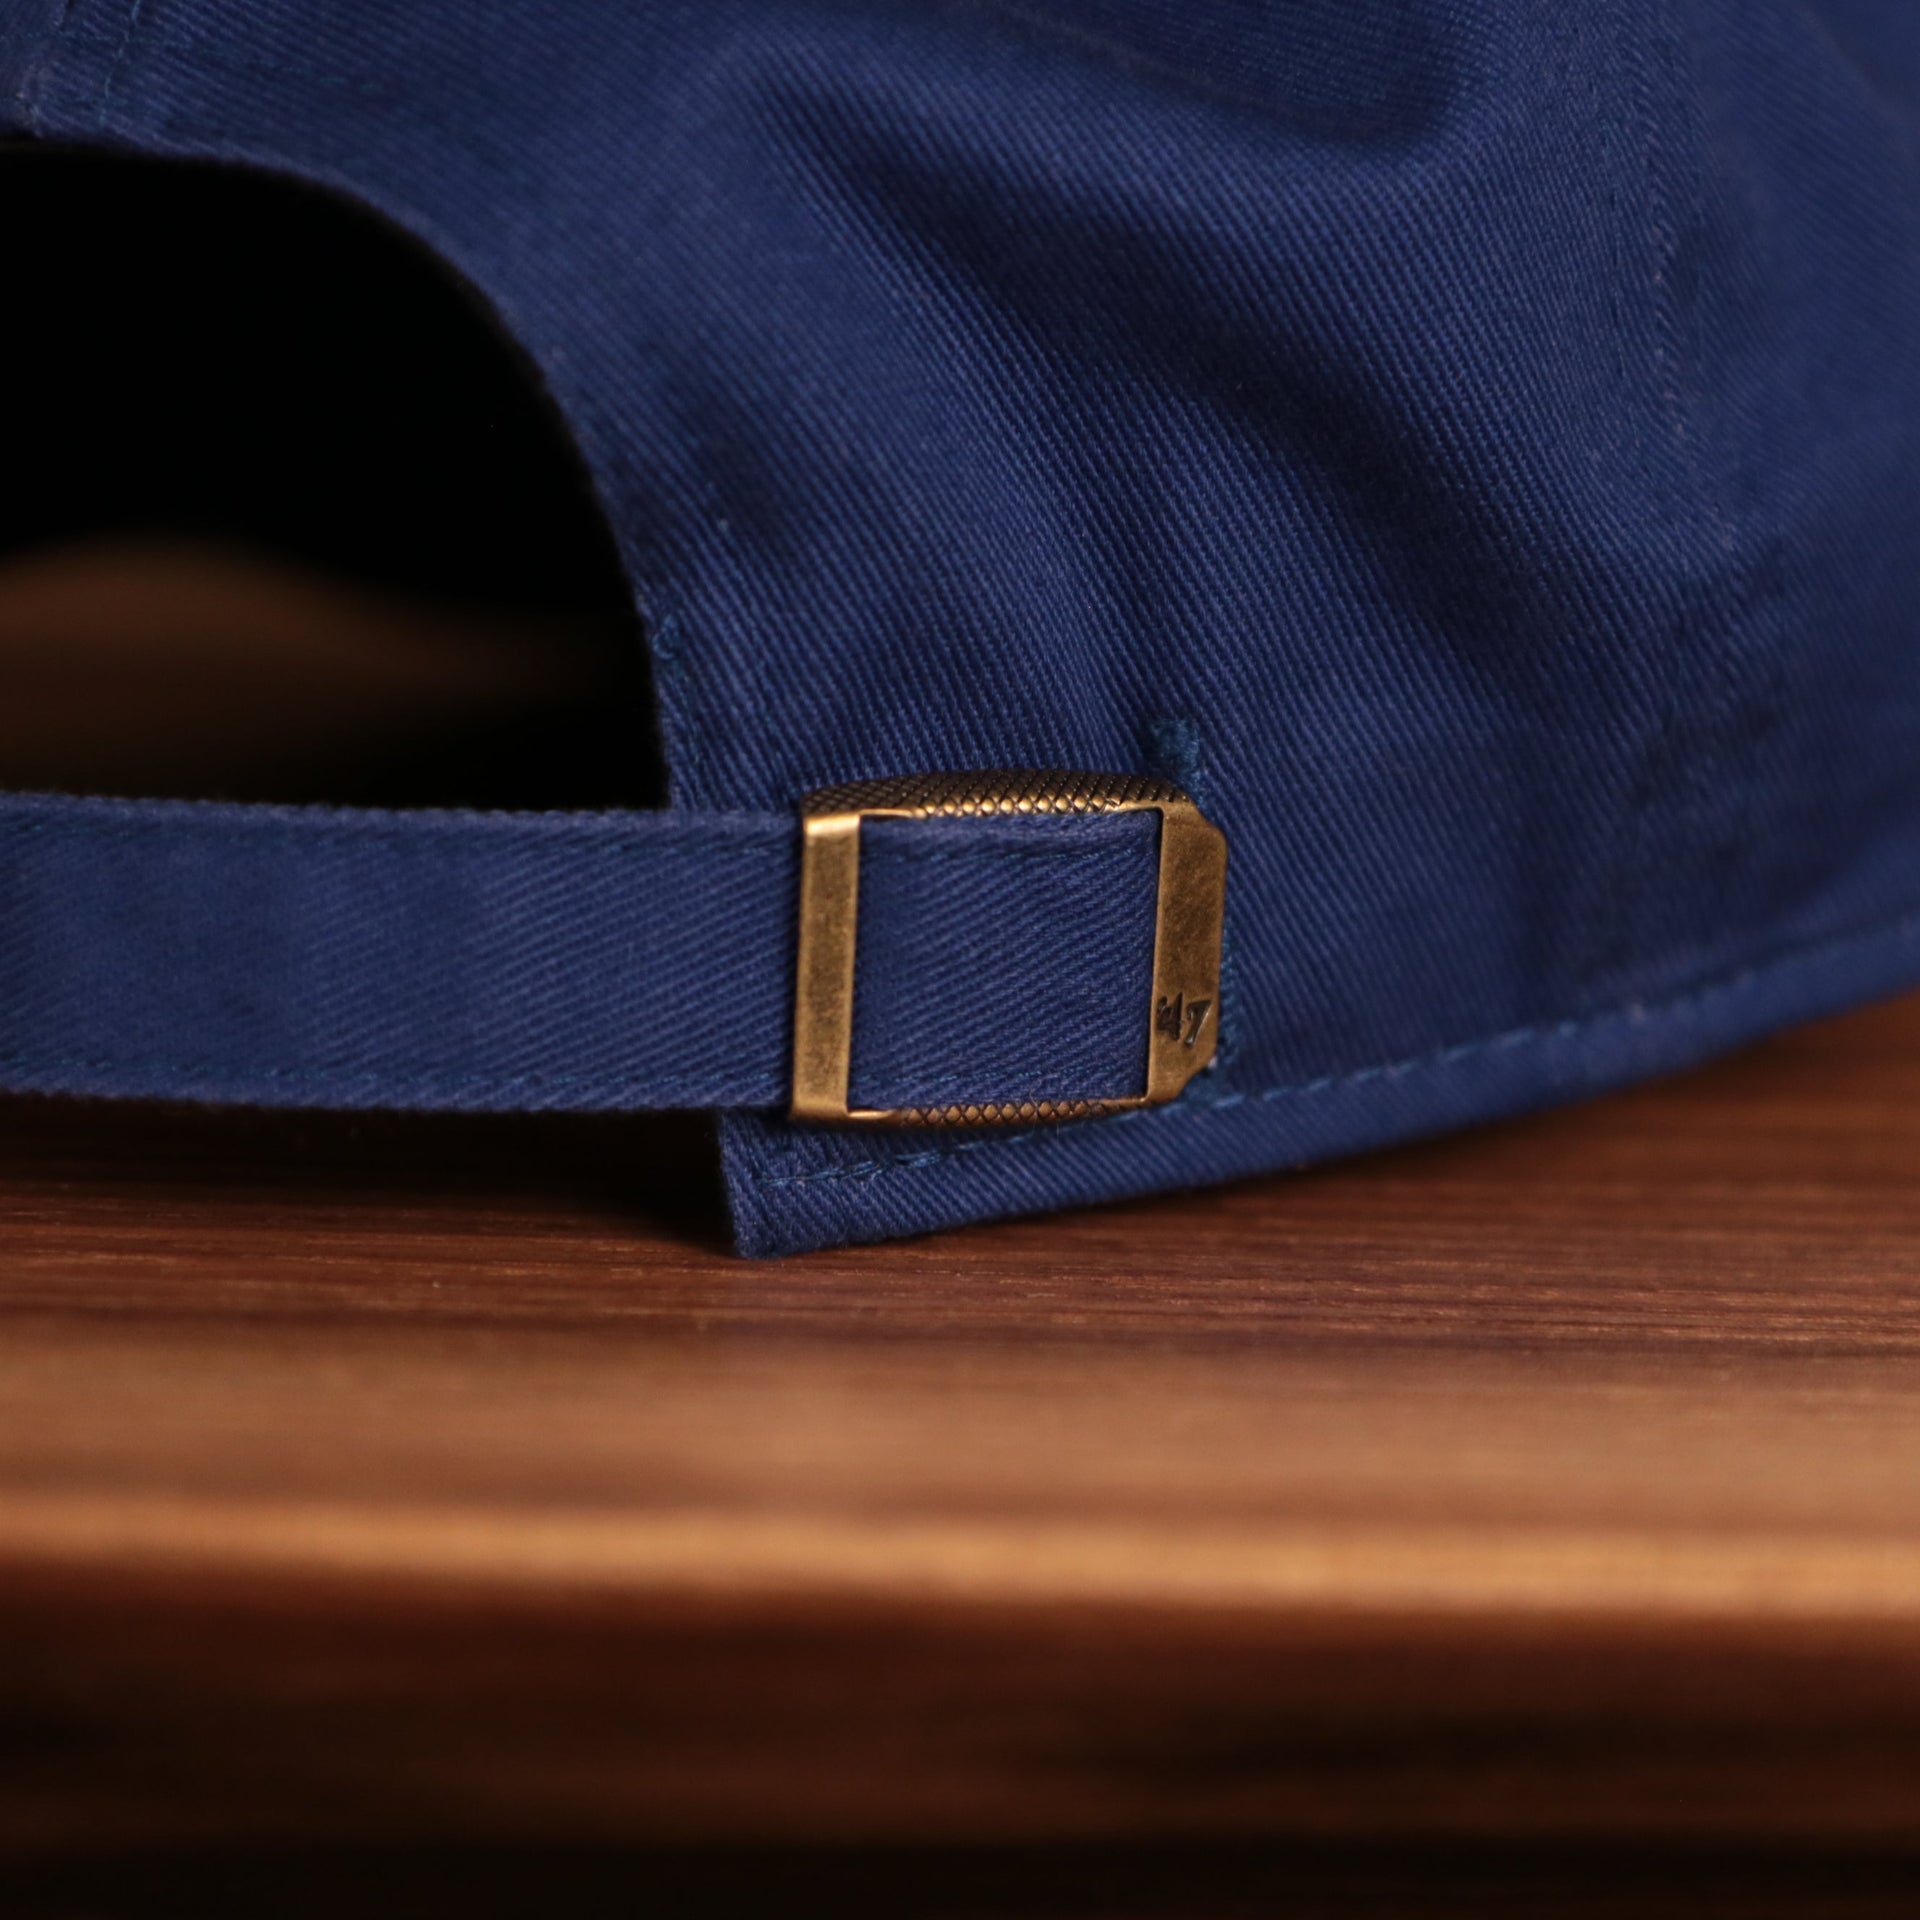 adjustable strap on the back of the Tampa Bay Lightning Royal Blue Adjustable Dad Hat